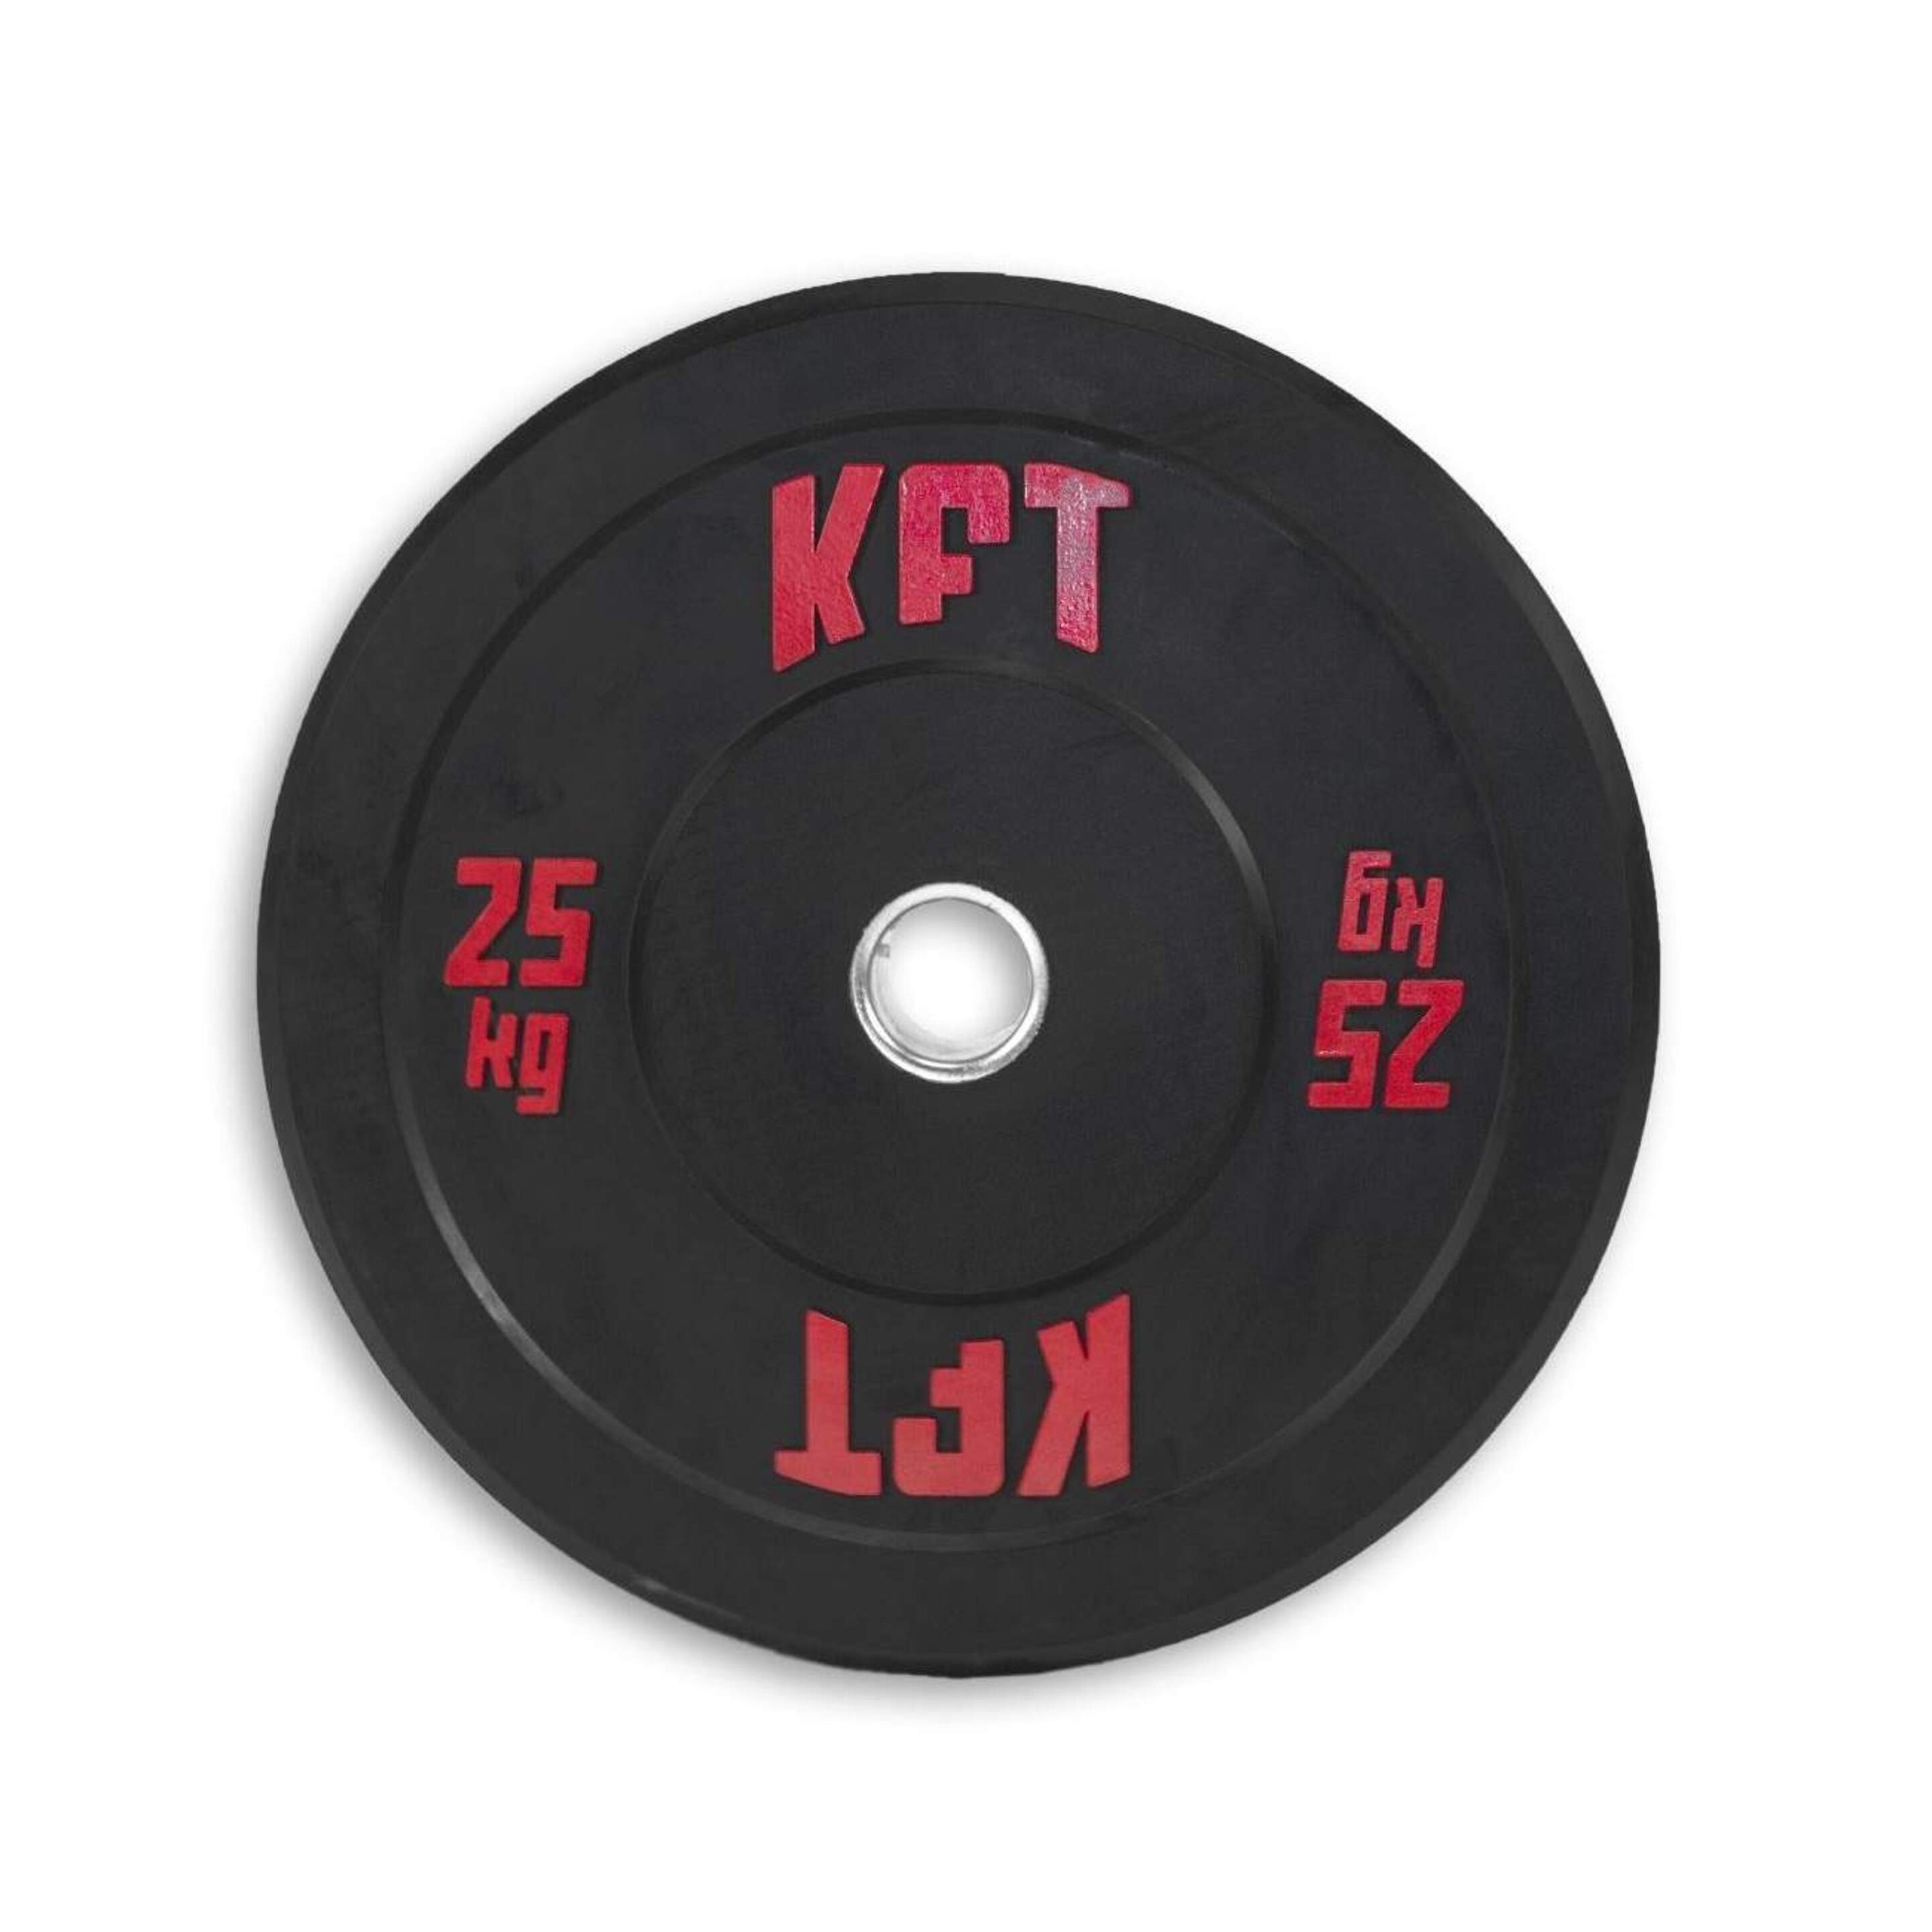 Disco Bumper Kft 25kg - Negro/Rojo  MKP